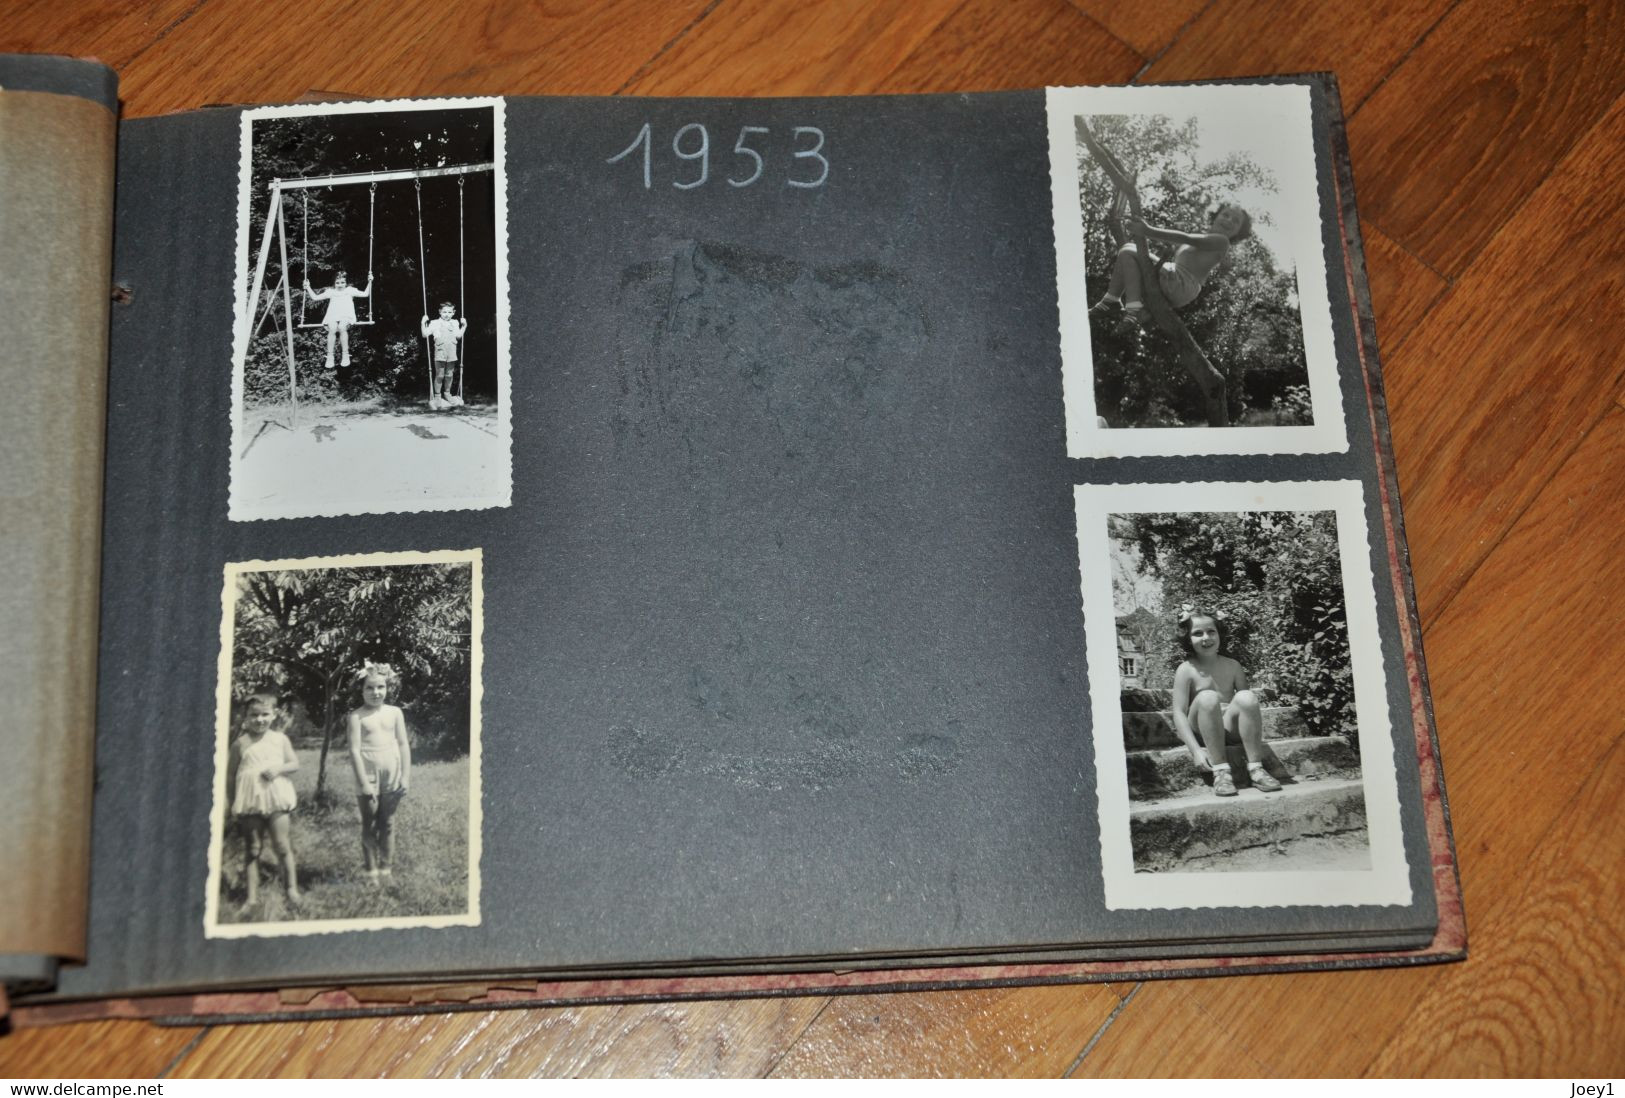 Bel Album de famille années 50 et 60 en bois,90 photos,vacances en Pologne, Cracovie,Varsovie.